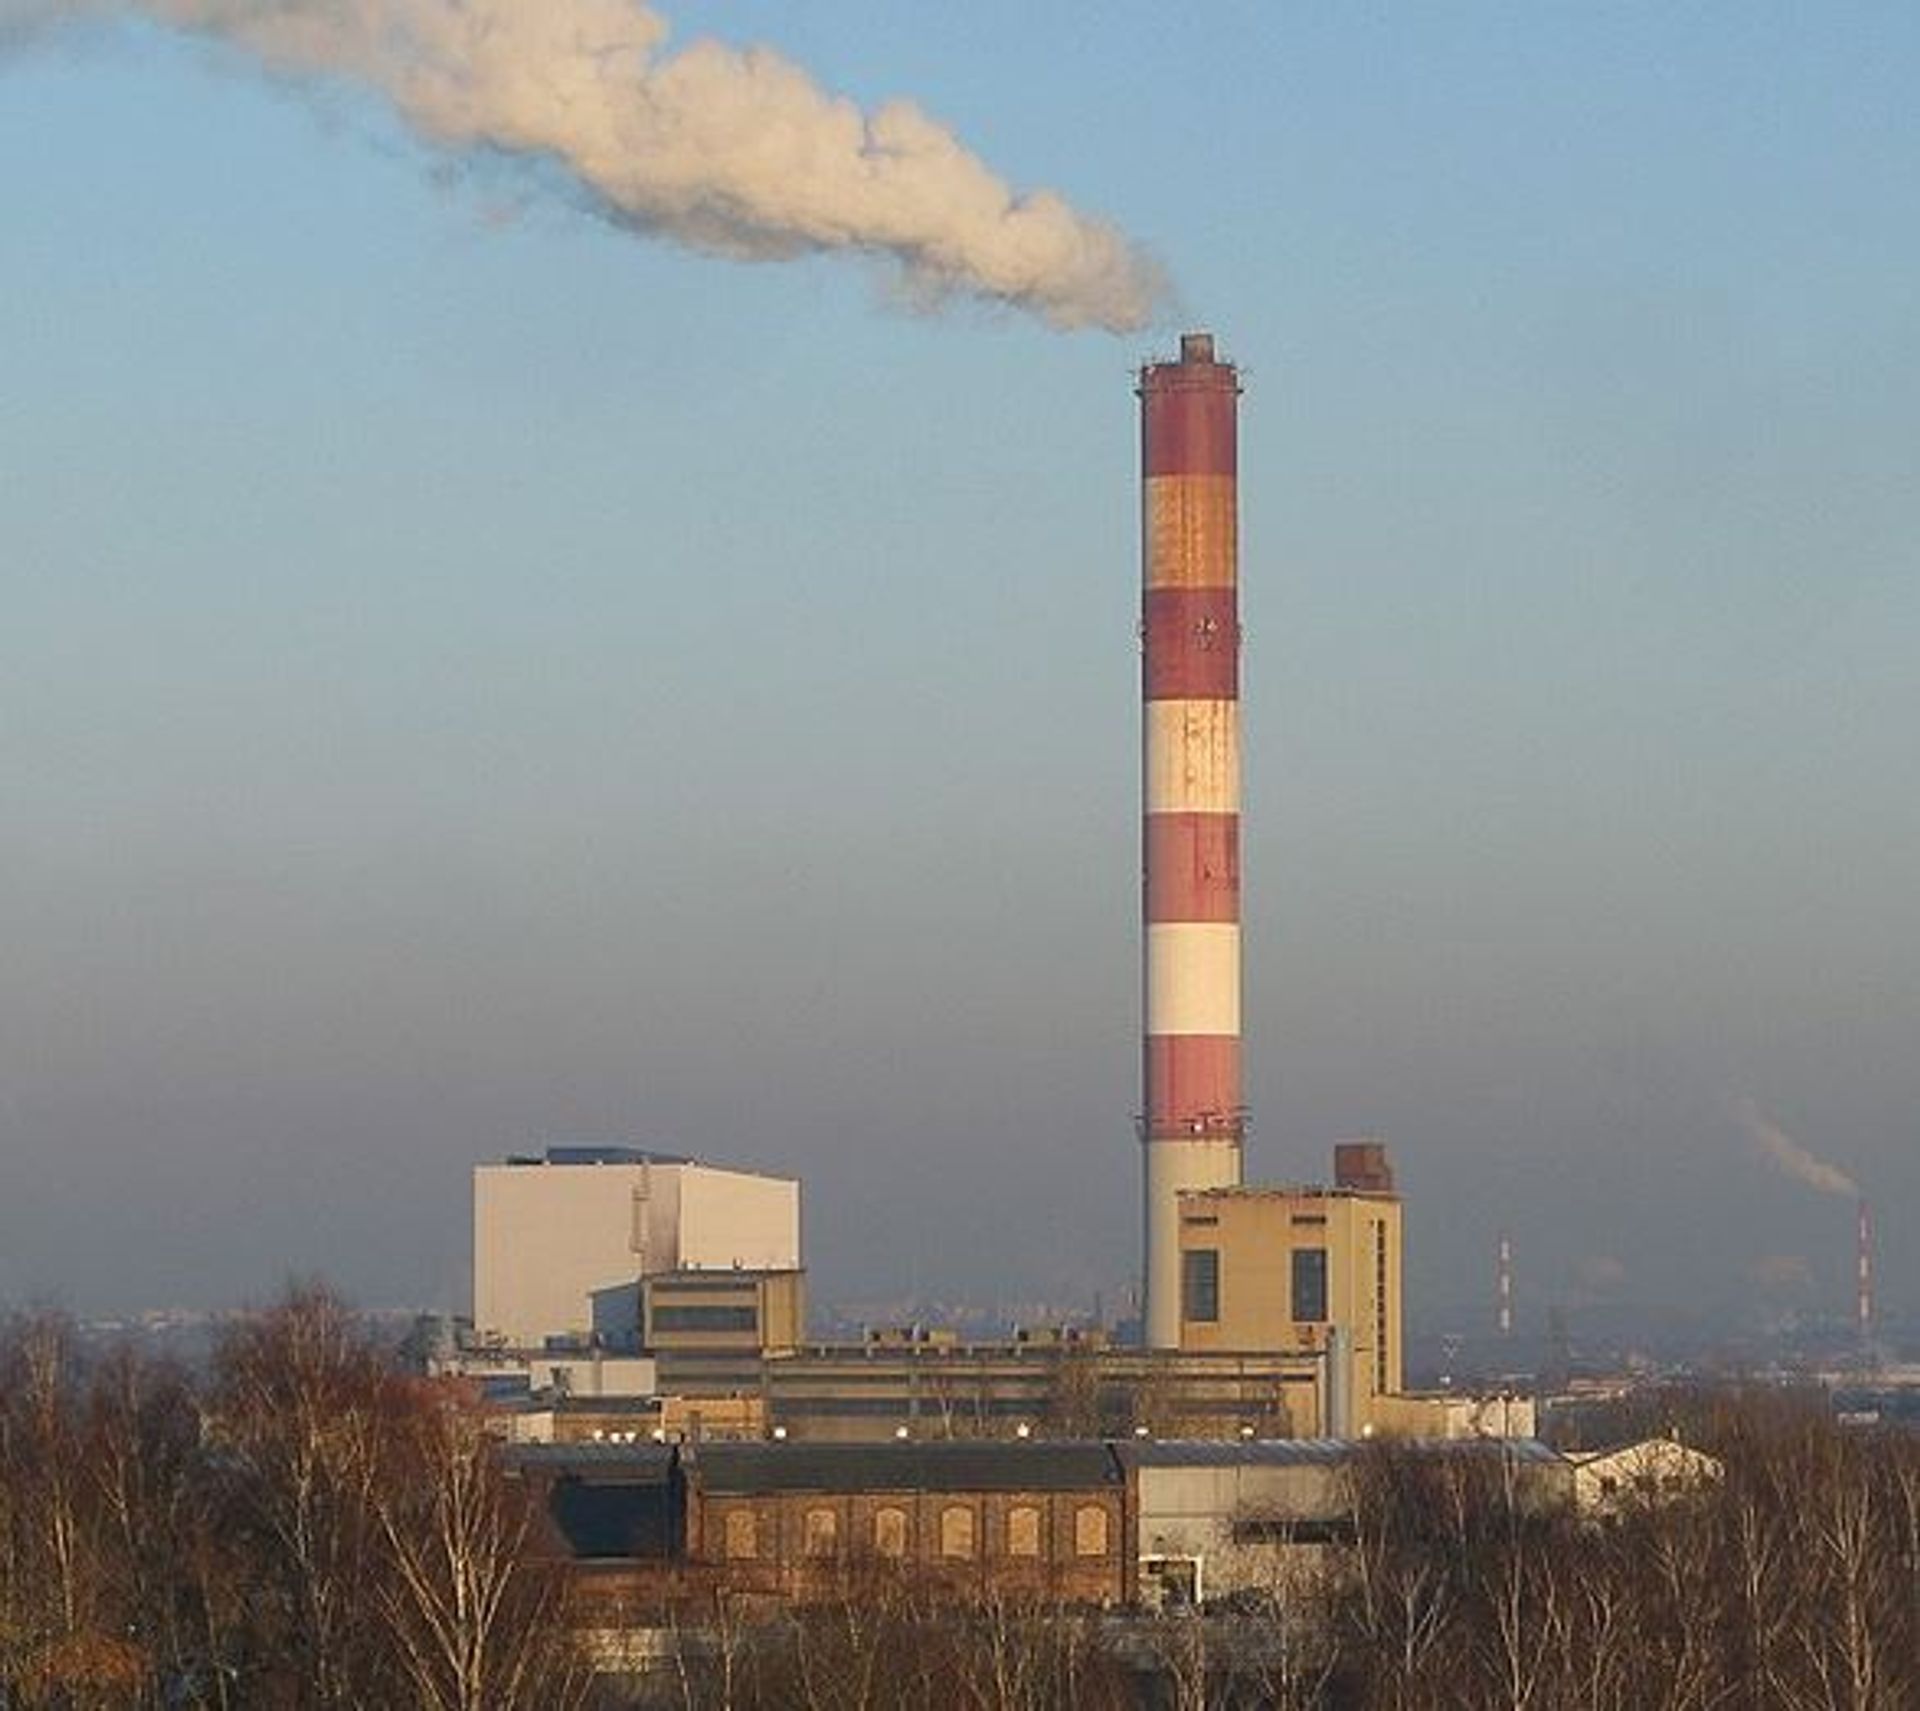 TAURON zainwestuje ponad 109 mln zł w budowę wodnego kotła gazowego w Elektrociepłowni Katowice